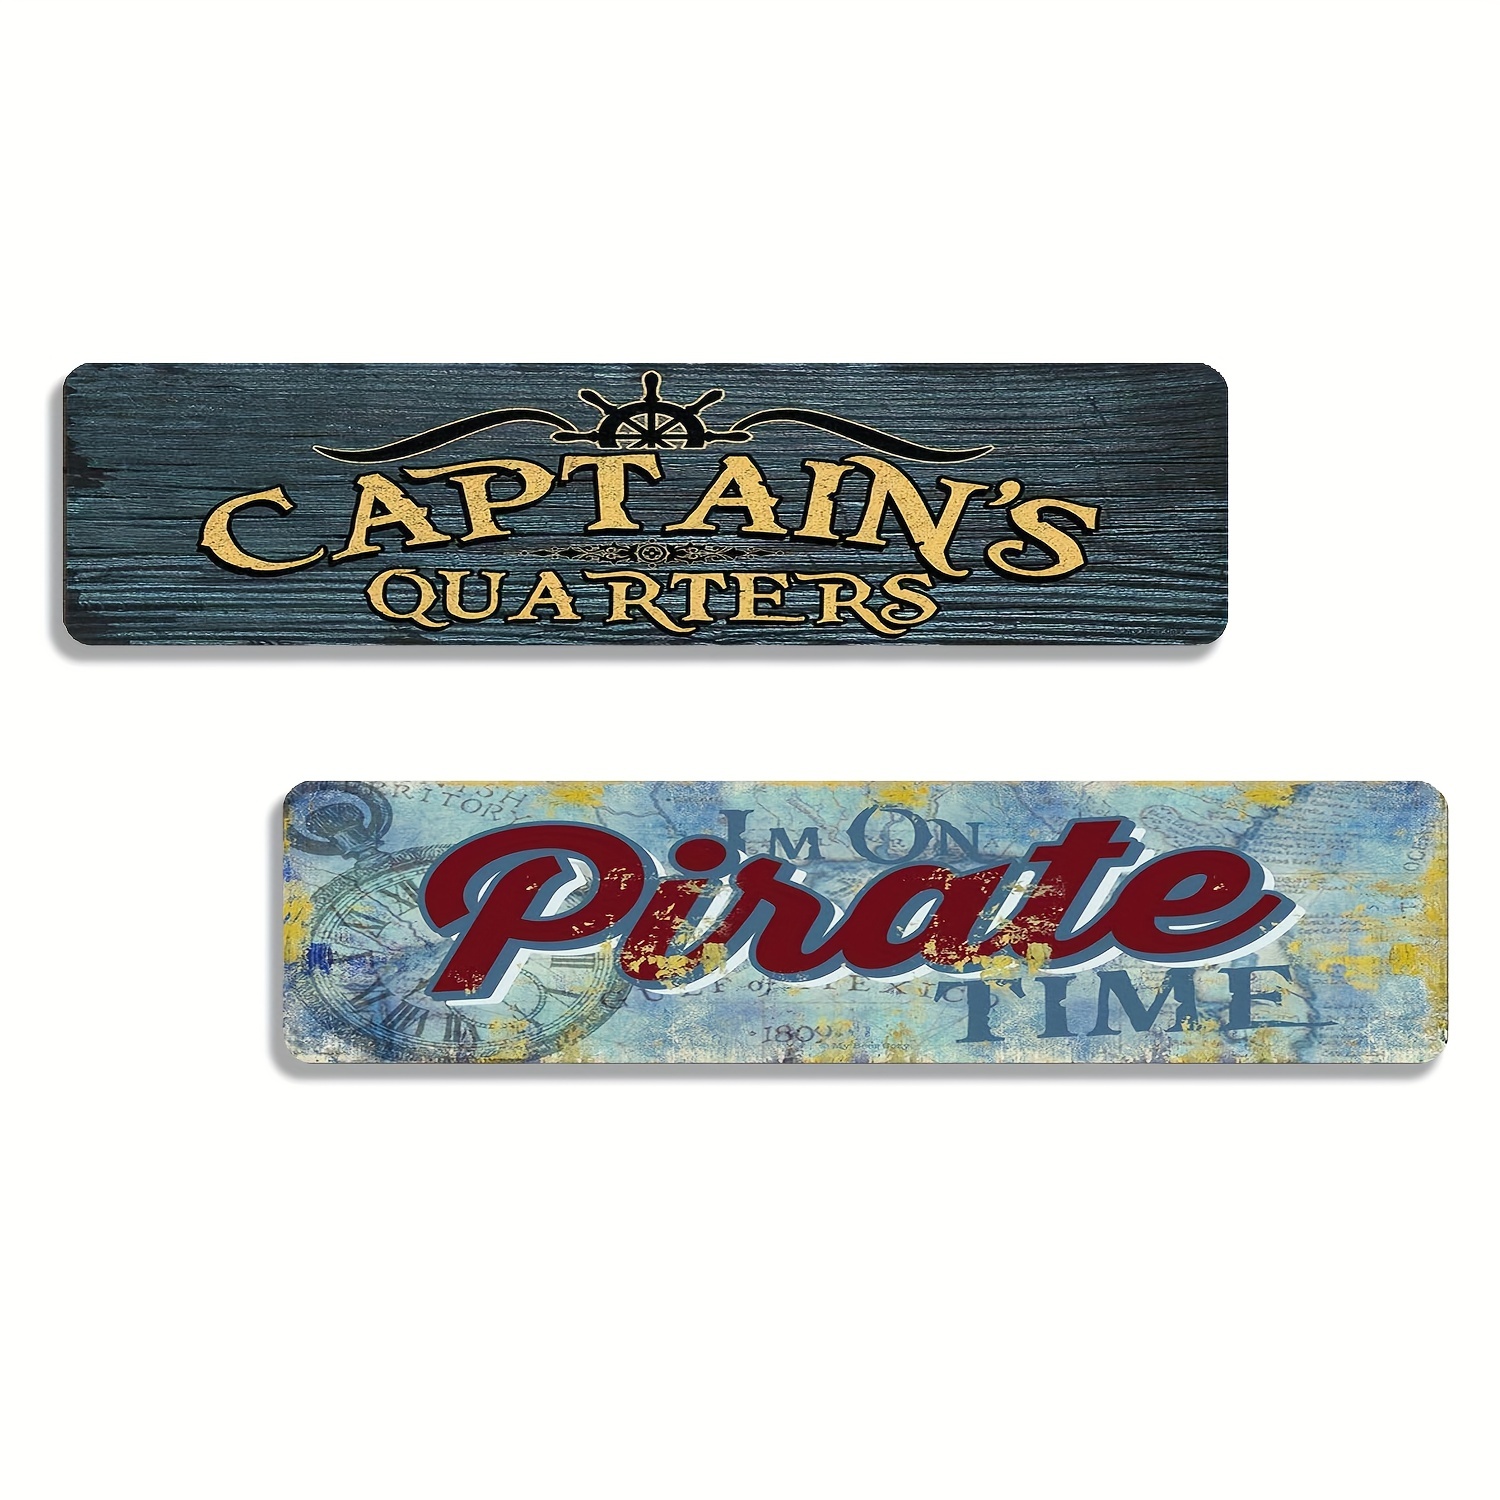 captains quarters …  Captains quarters, Leagues under the sea, Steampunk  house